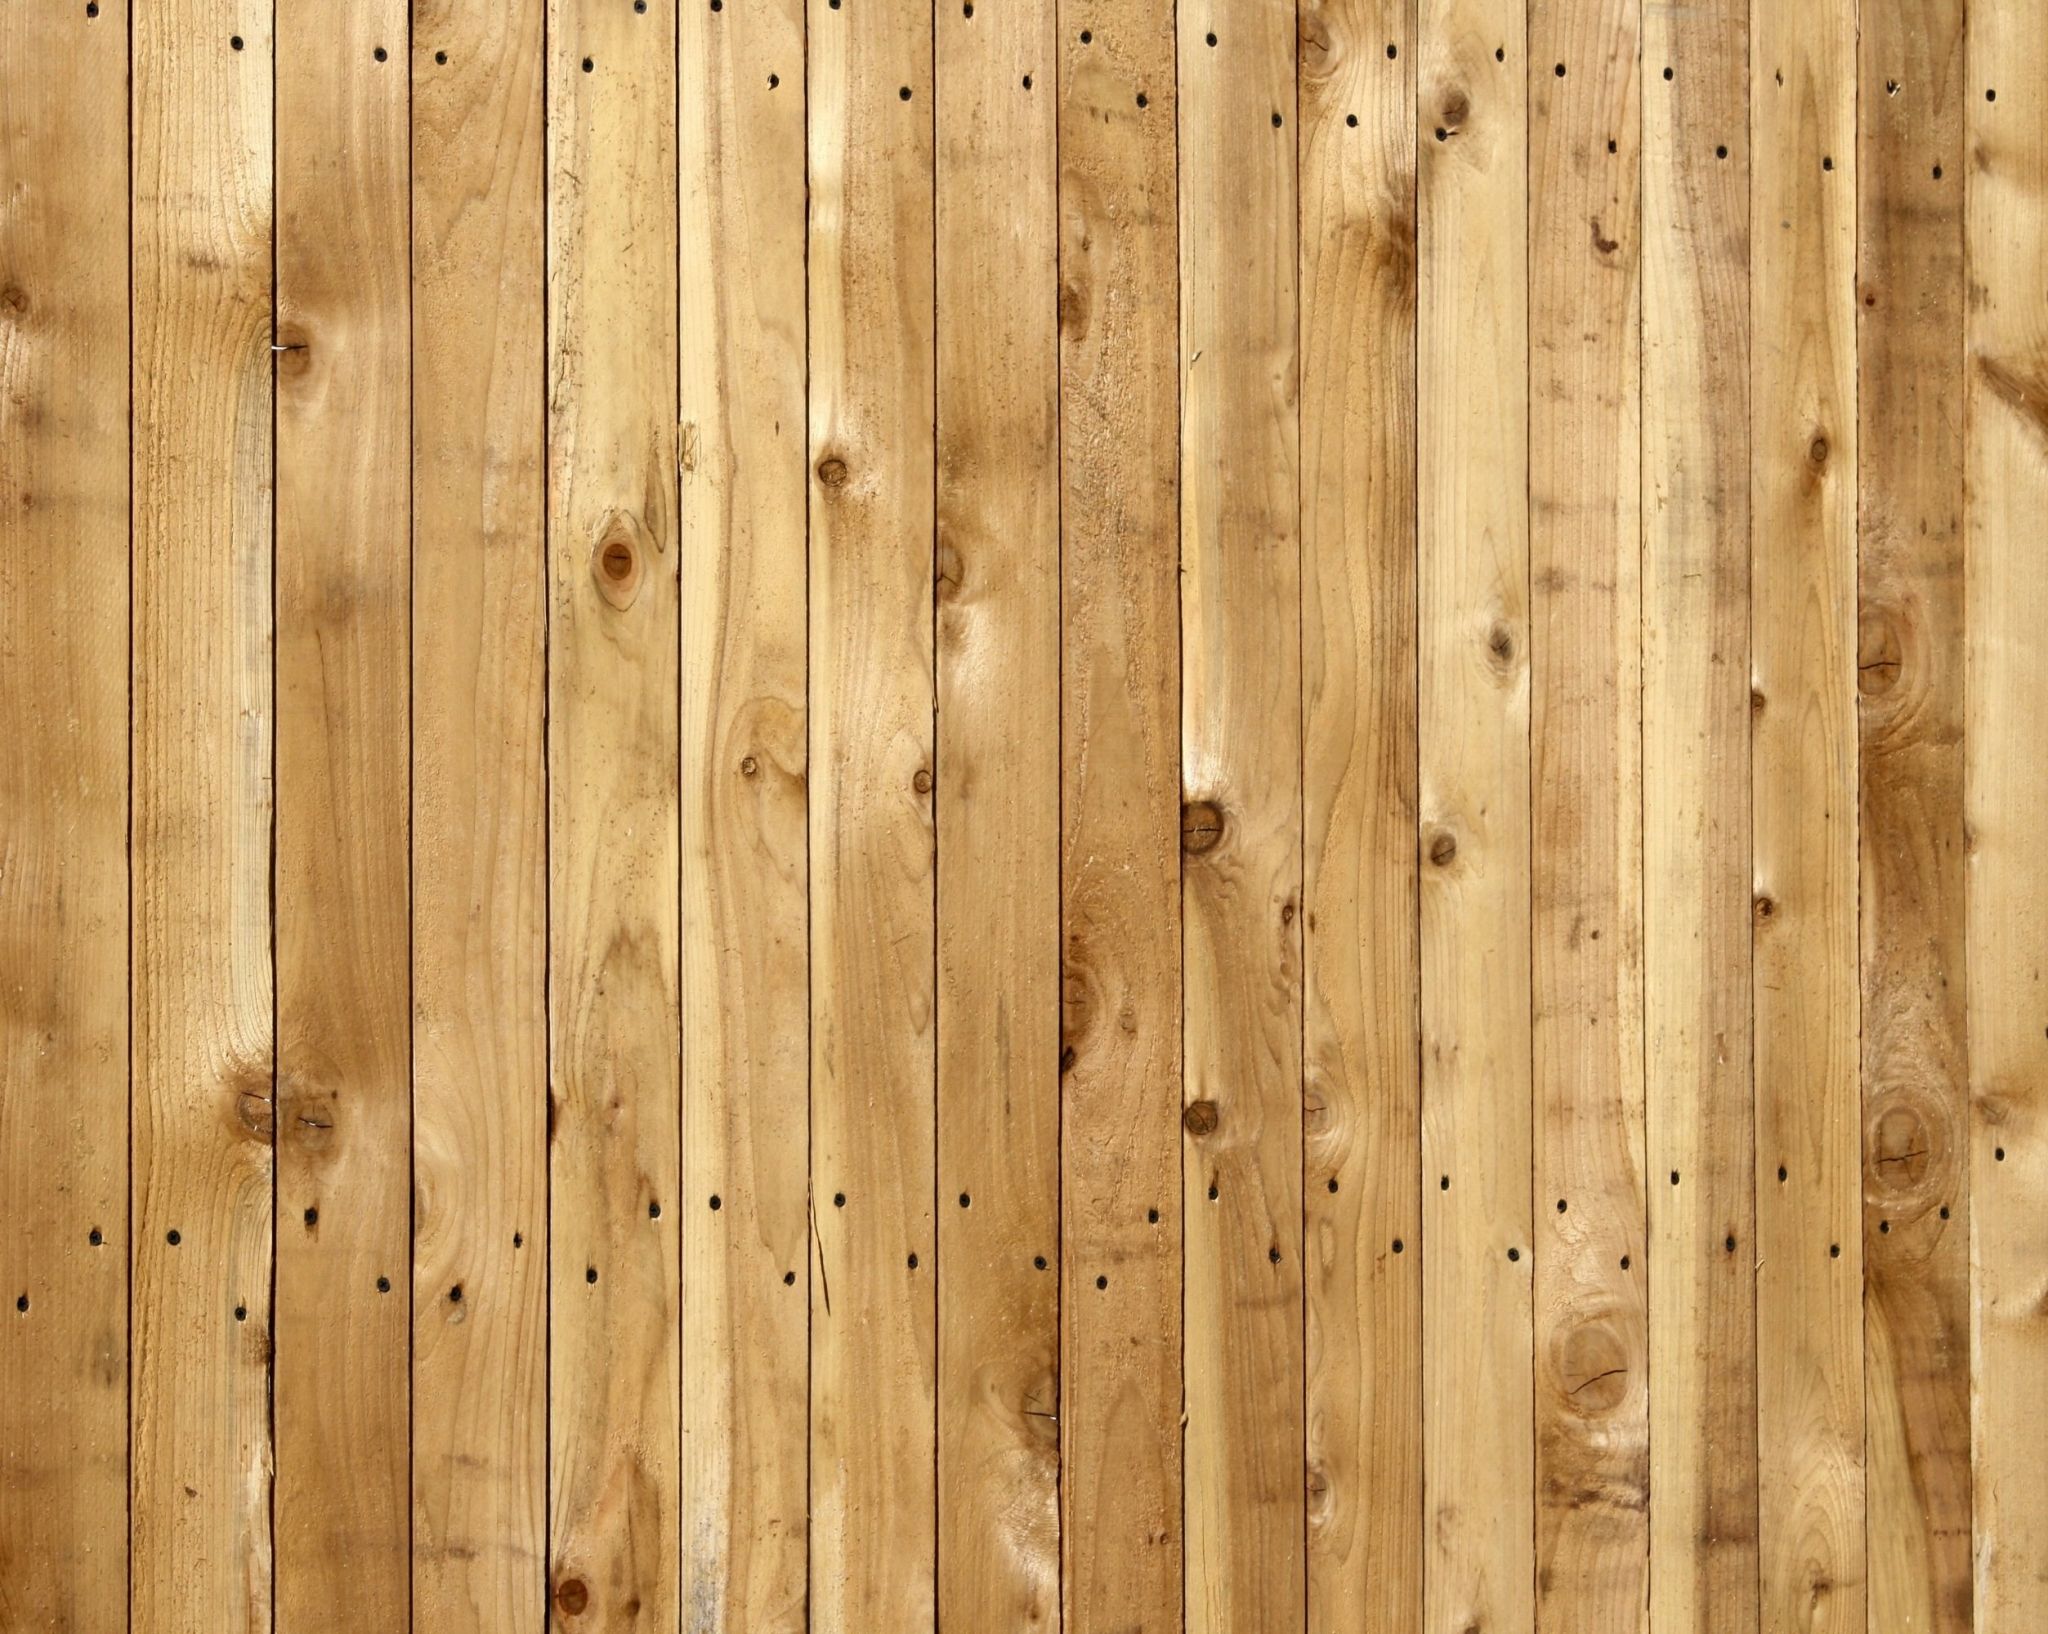 Fondos de madera - Los mejores fondos de madera gratis - WallpaperAccess